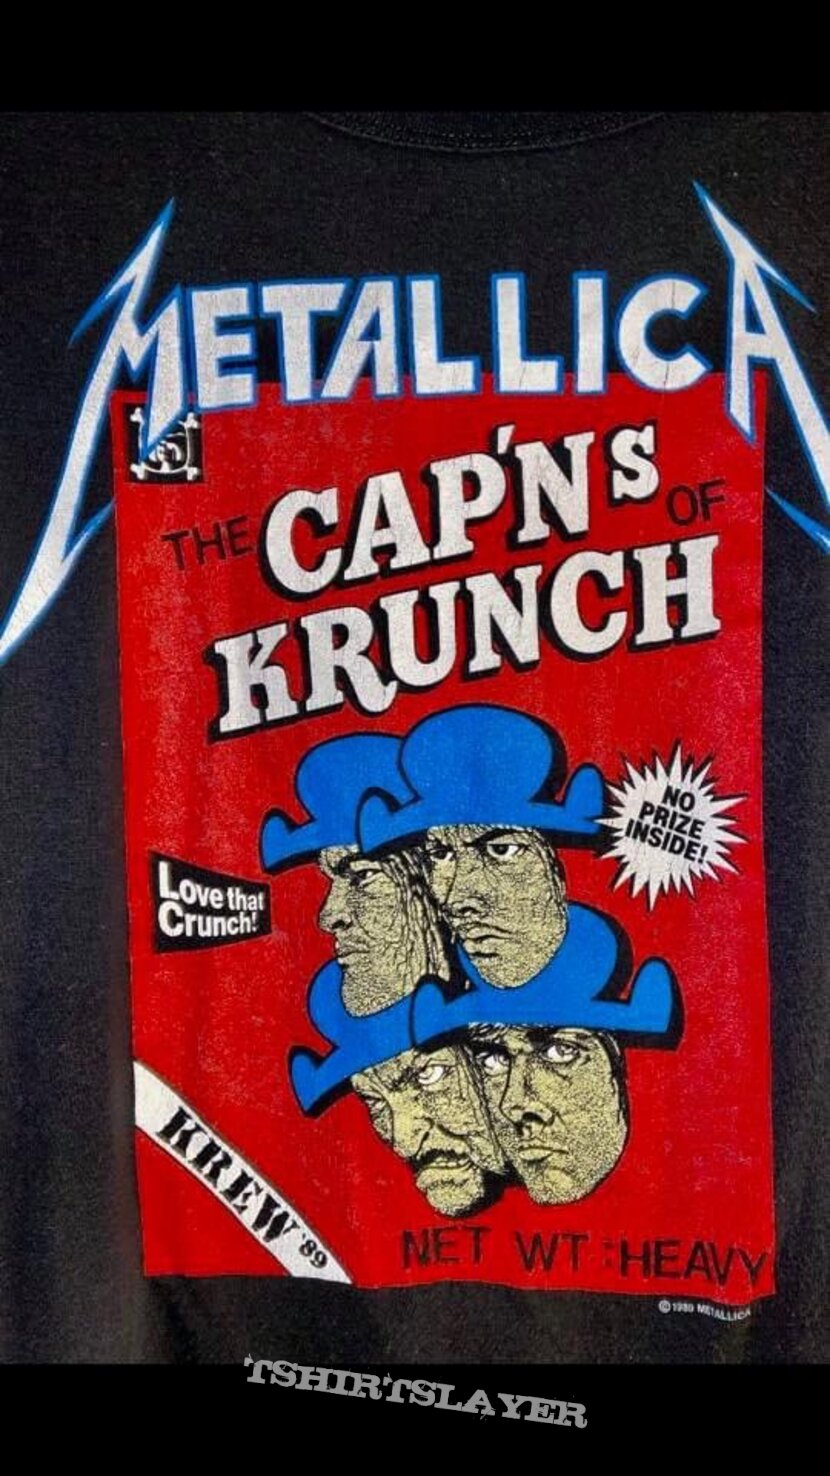 1989 Metallica Cap’ns of Krunch Krew shirt. 